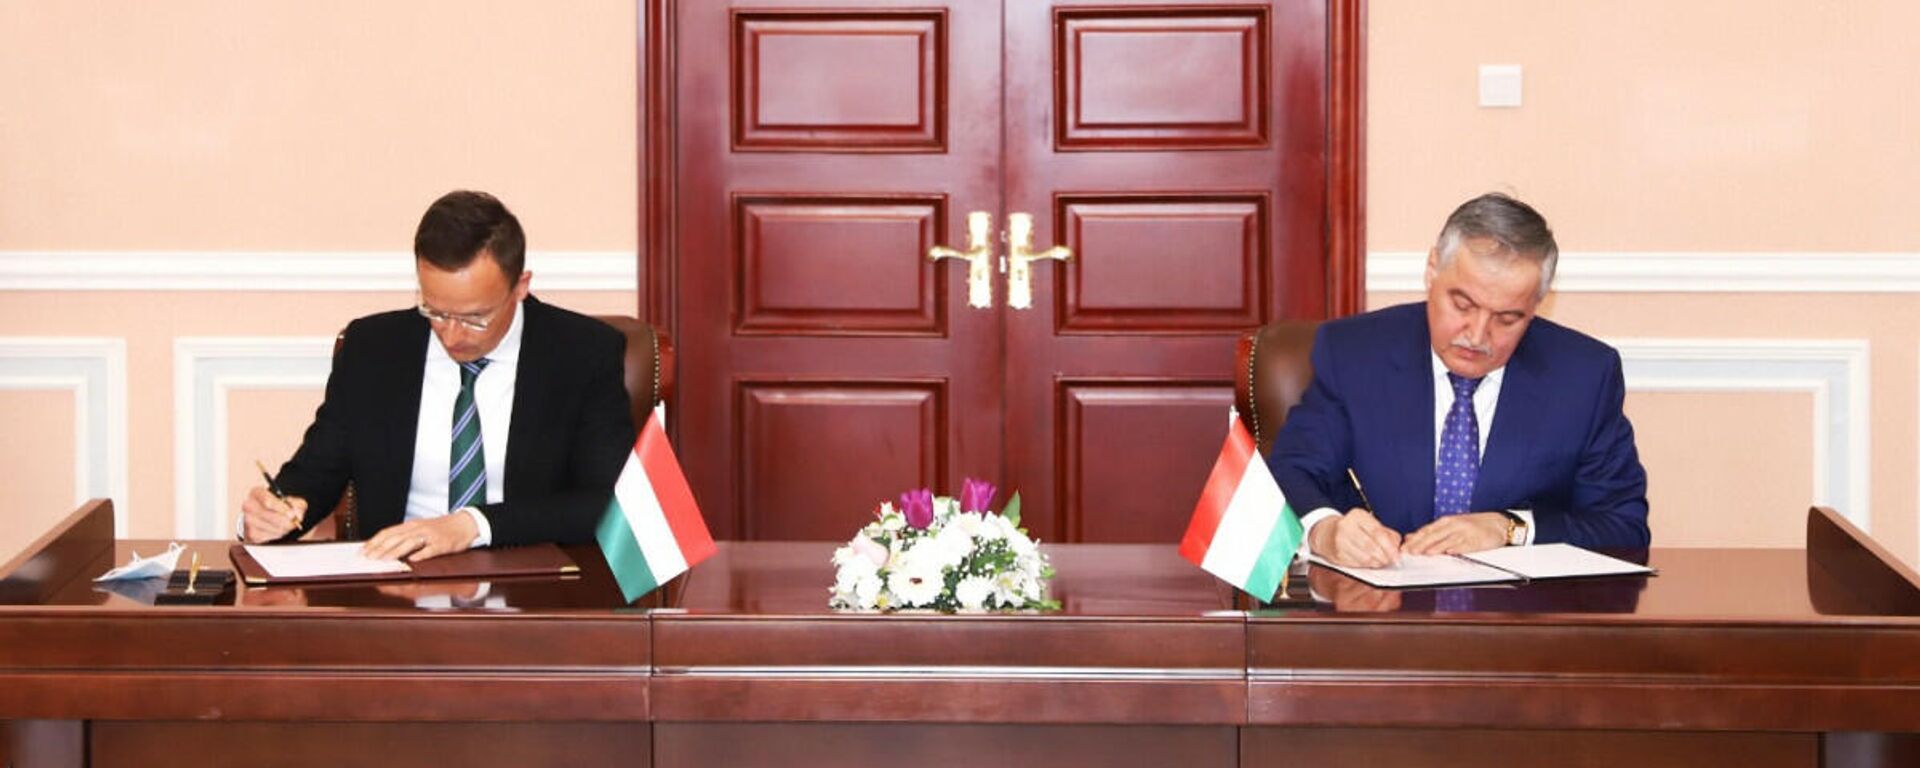 Подписание соглашения о сотрудничестве между Таджикистаном и Венгрии - Sputnik Тоҷикистон, 1920, 07.04.2021